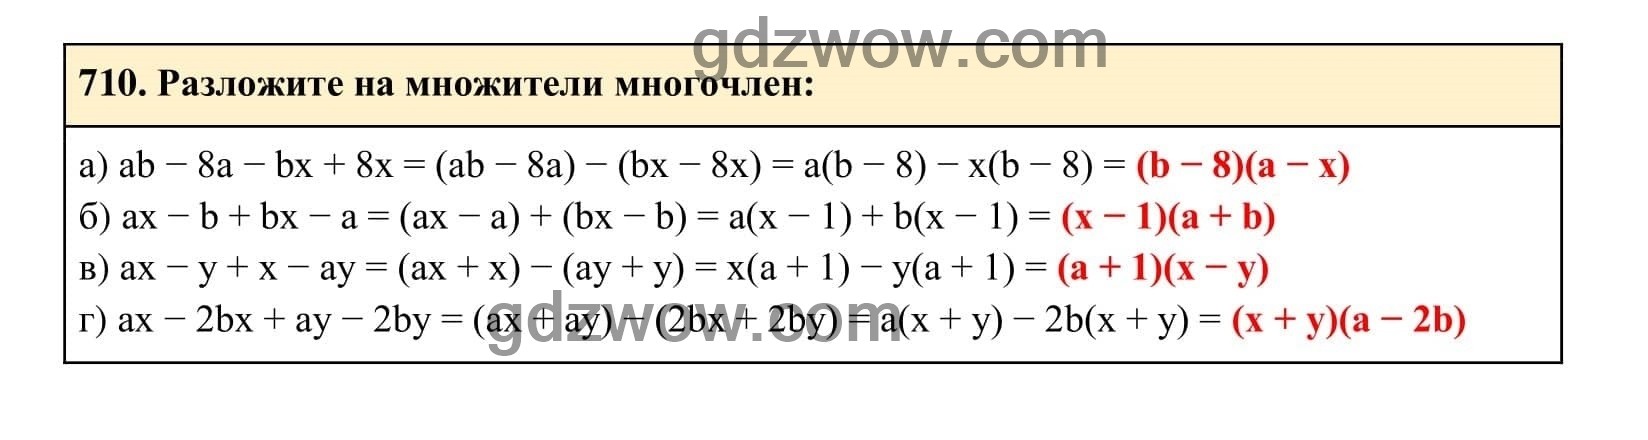 Упражнение 710 - ГДЗ по Алгебре 7 класс Учебник Макарычев (решебник) - GDZwow